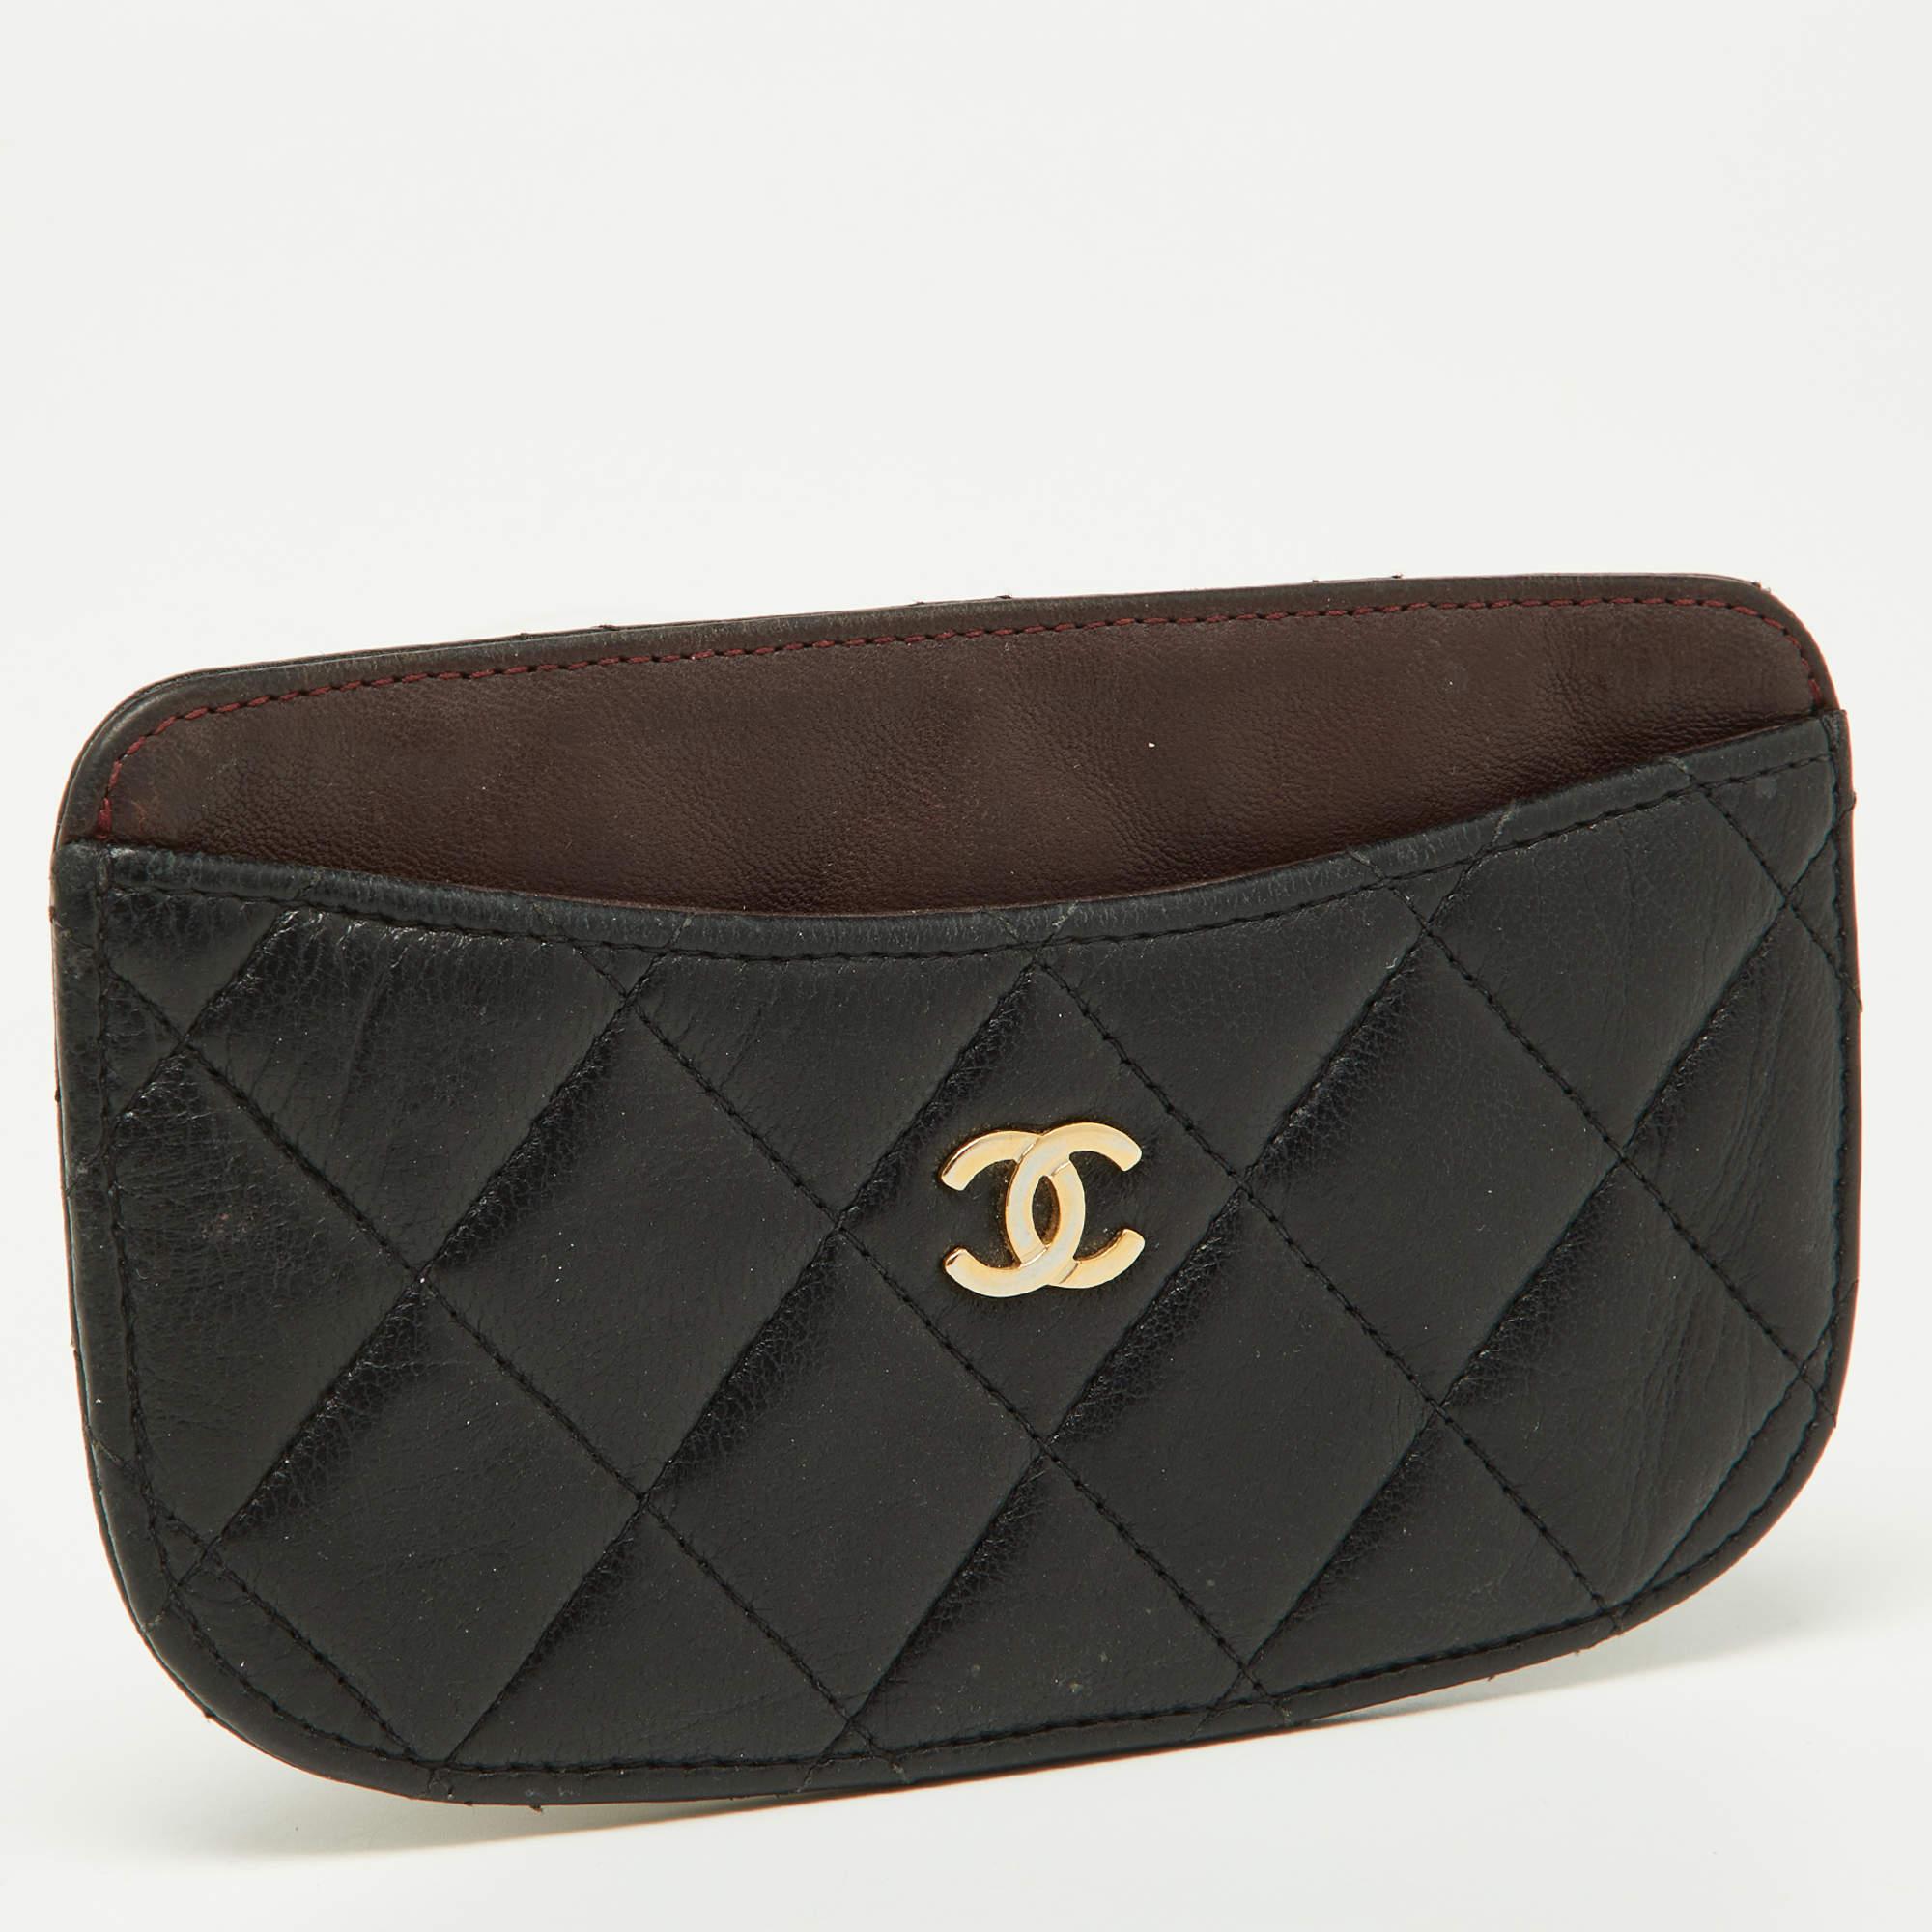 Transportez vos cartes de crédit avec style grâce à ce porte-cartes en cuir de Chanel. Il présente un extérieur matelassé avec deux poches à glissière à l'avant et à l'arrière, une poche centrale à glissière et le logo CC en ton argenté.

